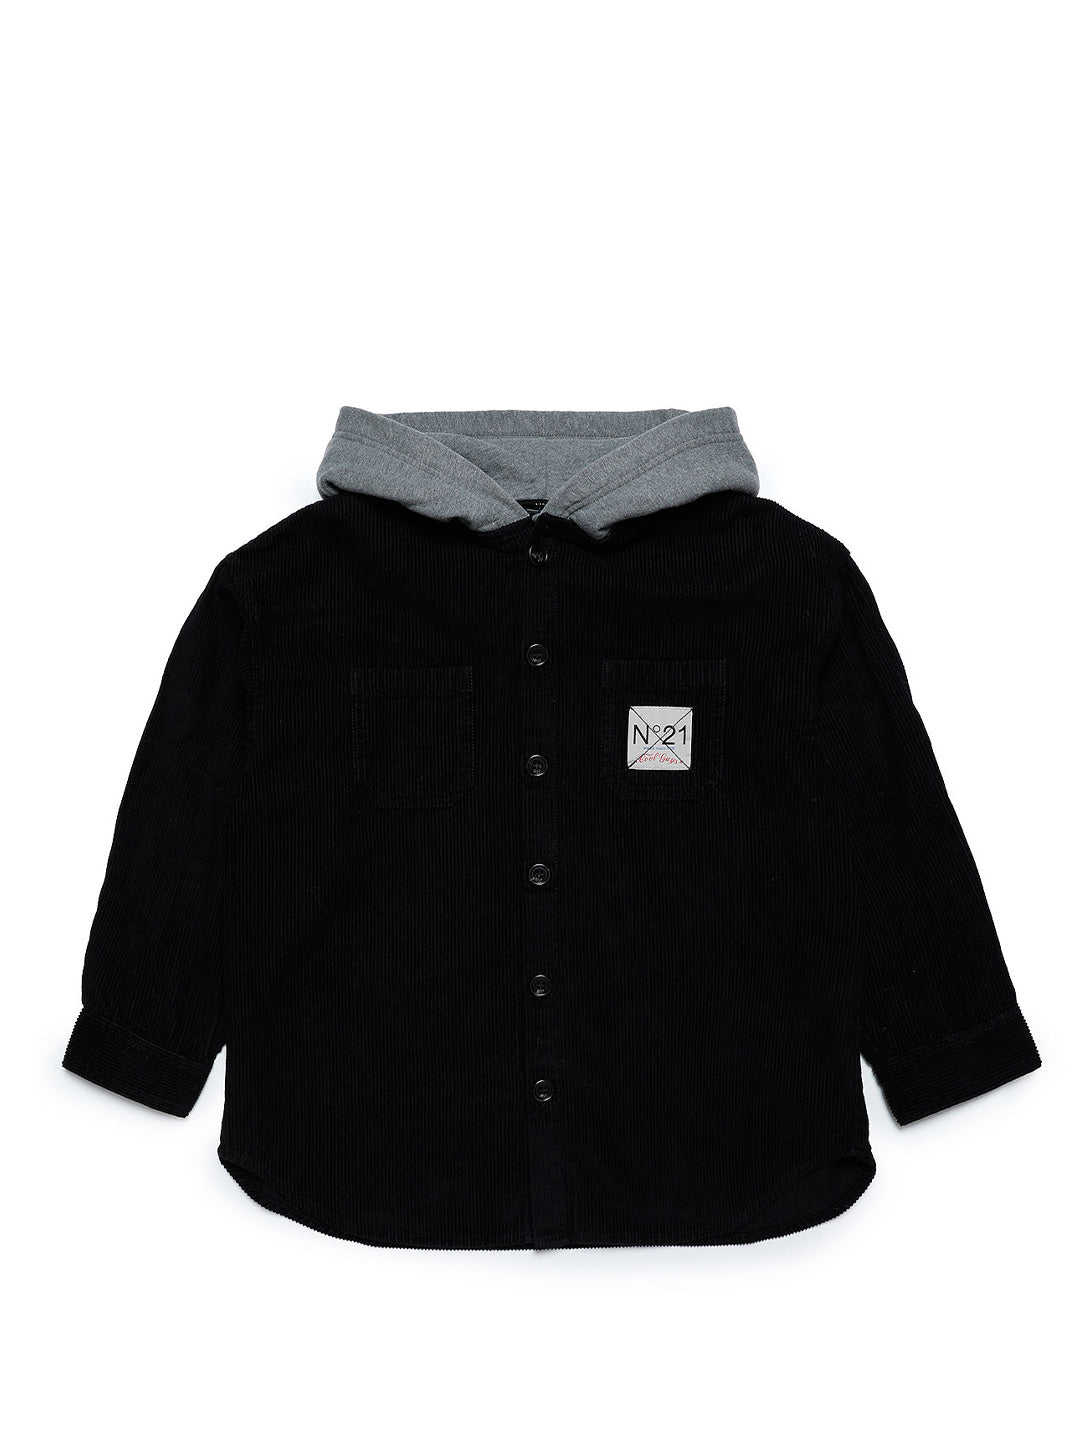 N21 camicia overshirt kids nero con cappuccio in felpa